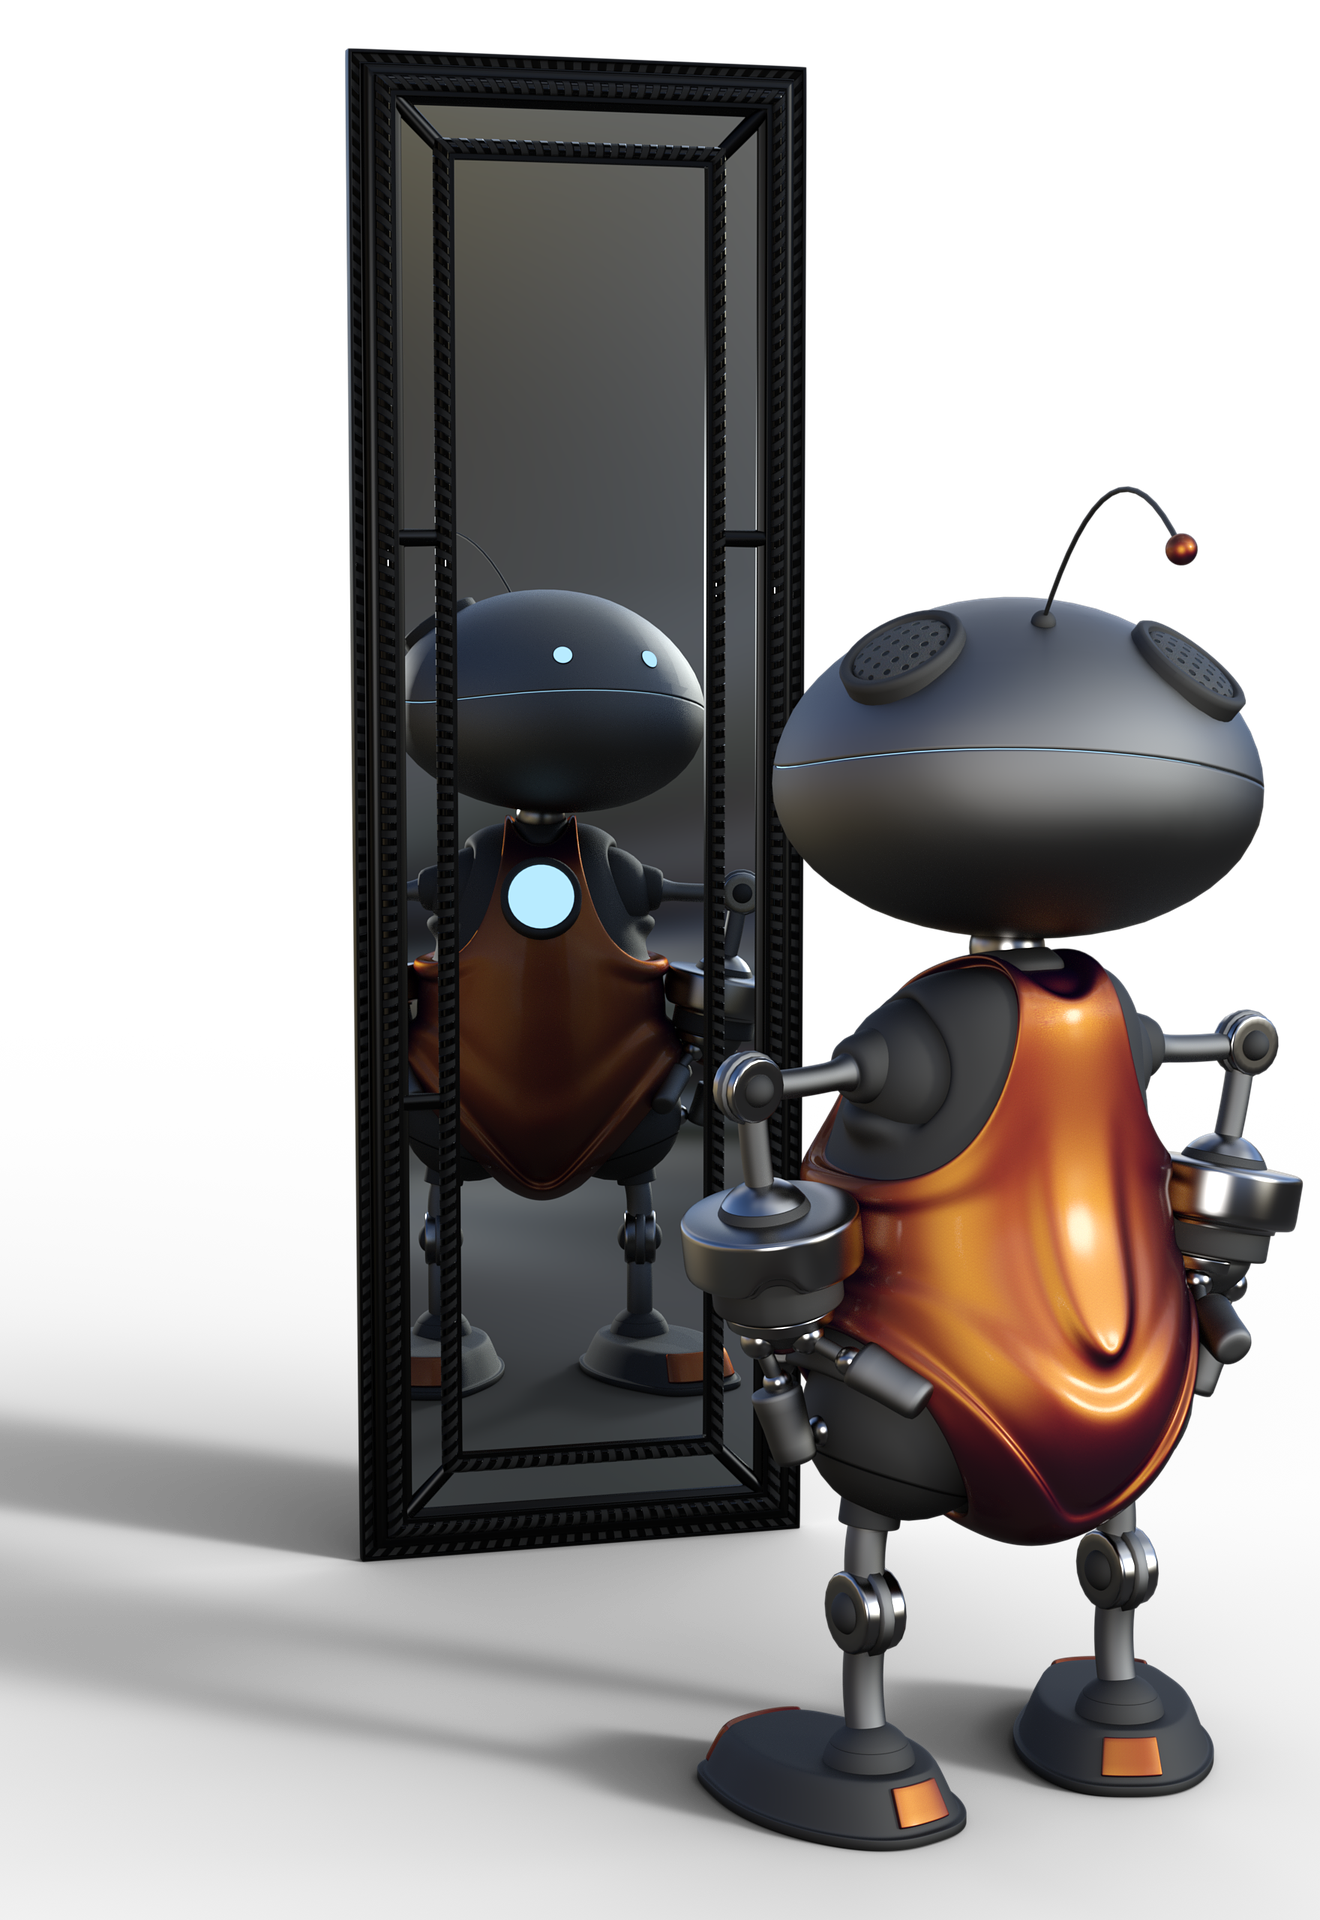 cute robotic bug looking in mirror